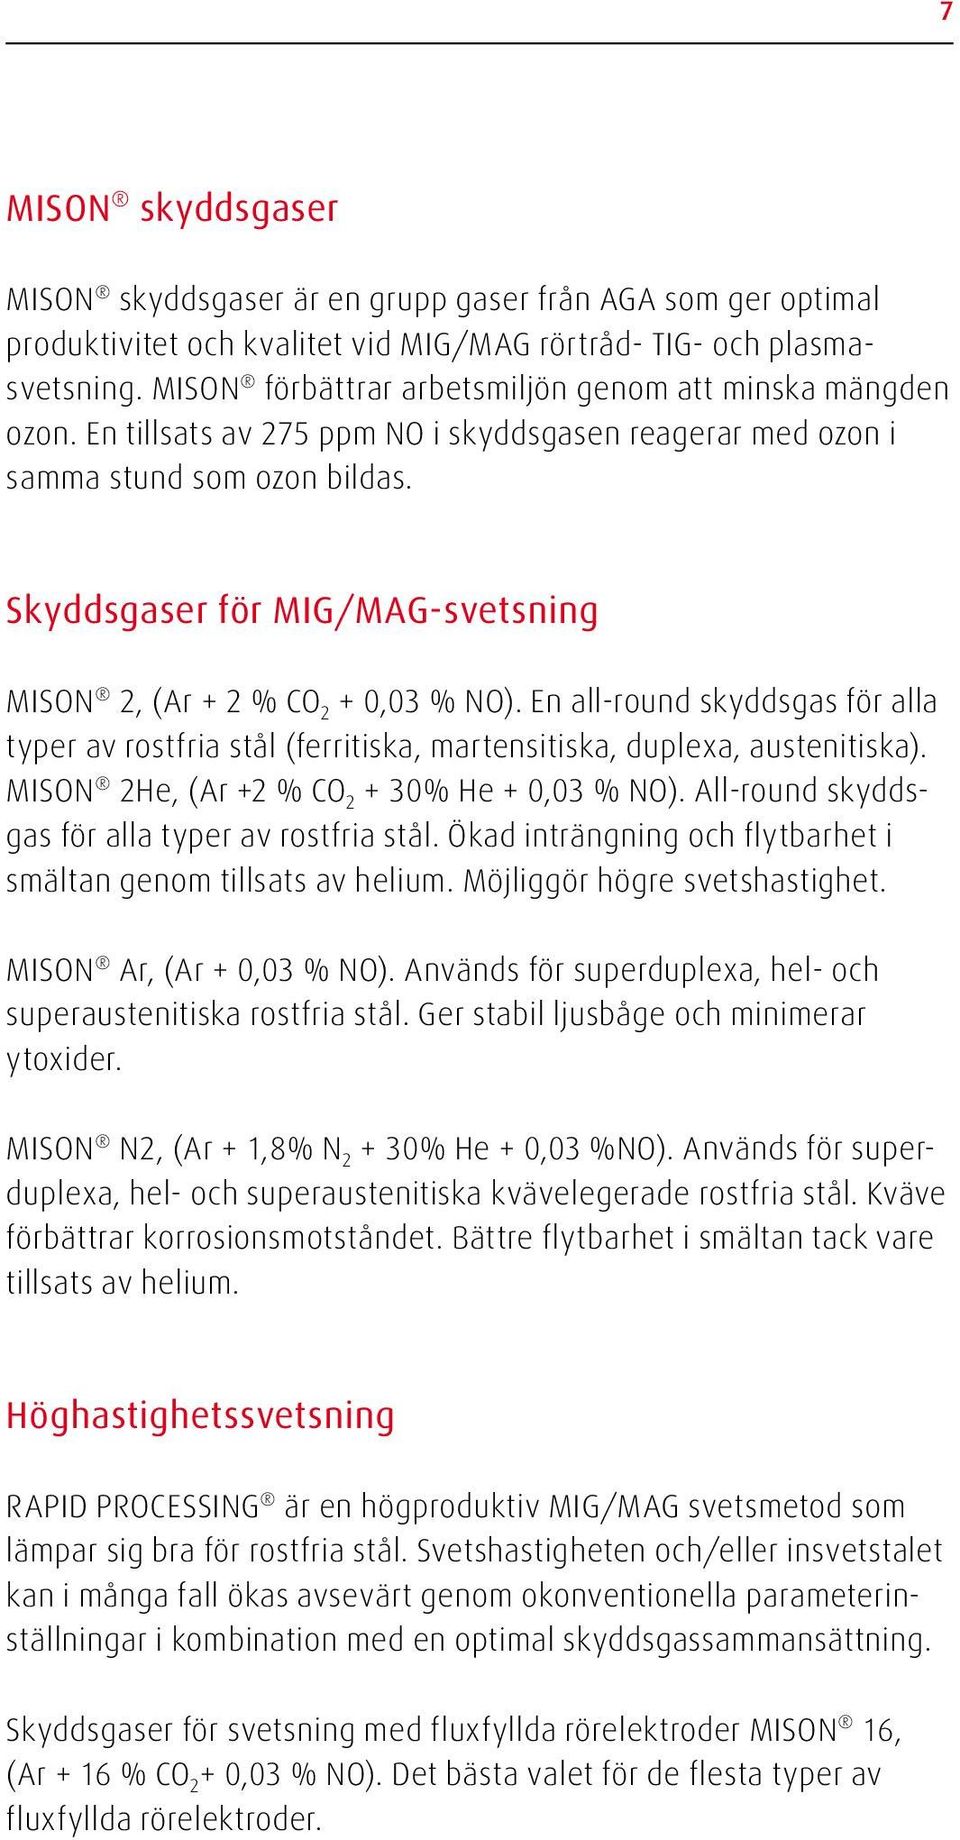 Skyddsgaser för MIG/MAG-svetsning MISON 2, (Ar + 2 % CO 2 + 0,03 % NO). En all-round skyddsgas för alla typer av rostfria stål (ferritiska, martensitiska, duplexa, austenitiska).